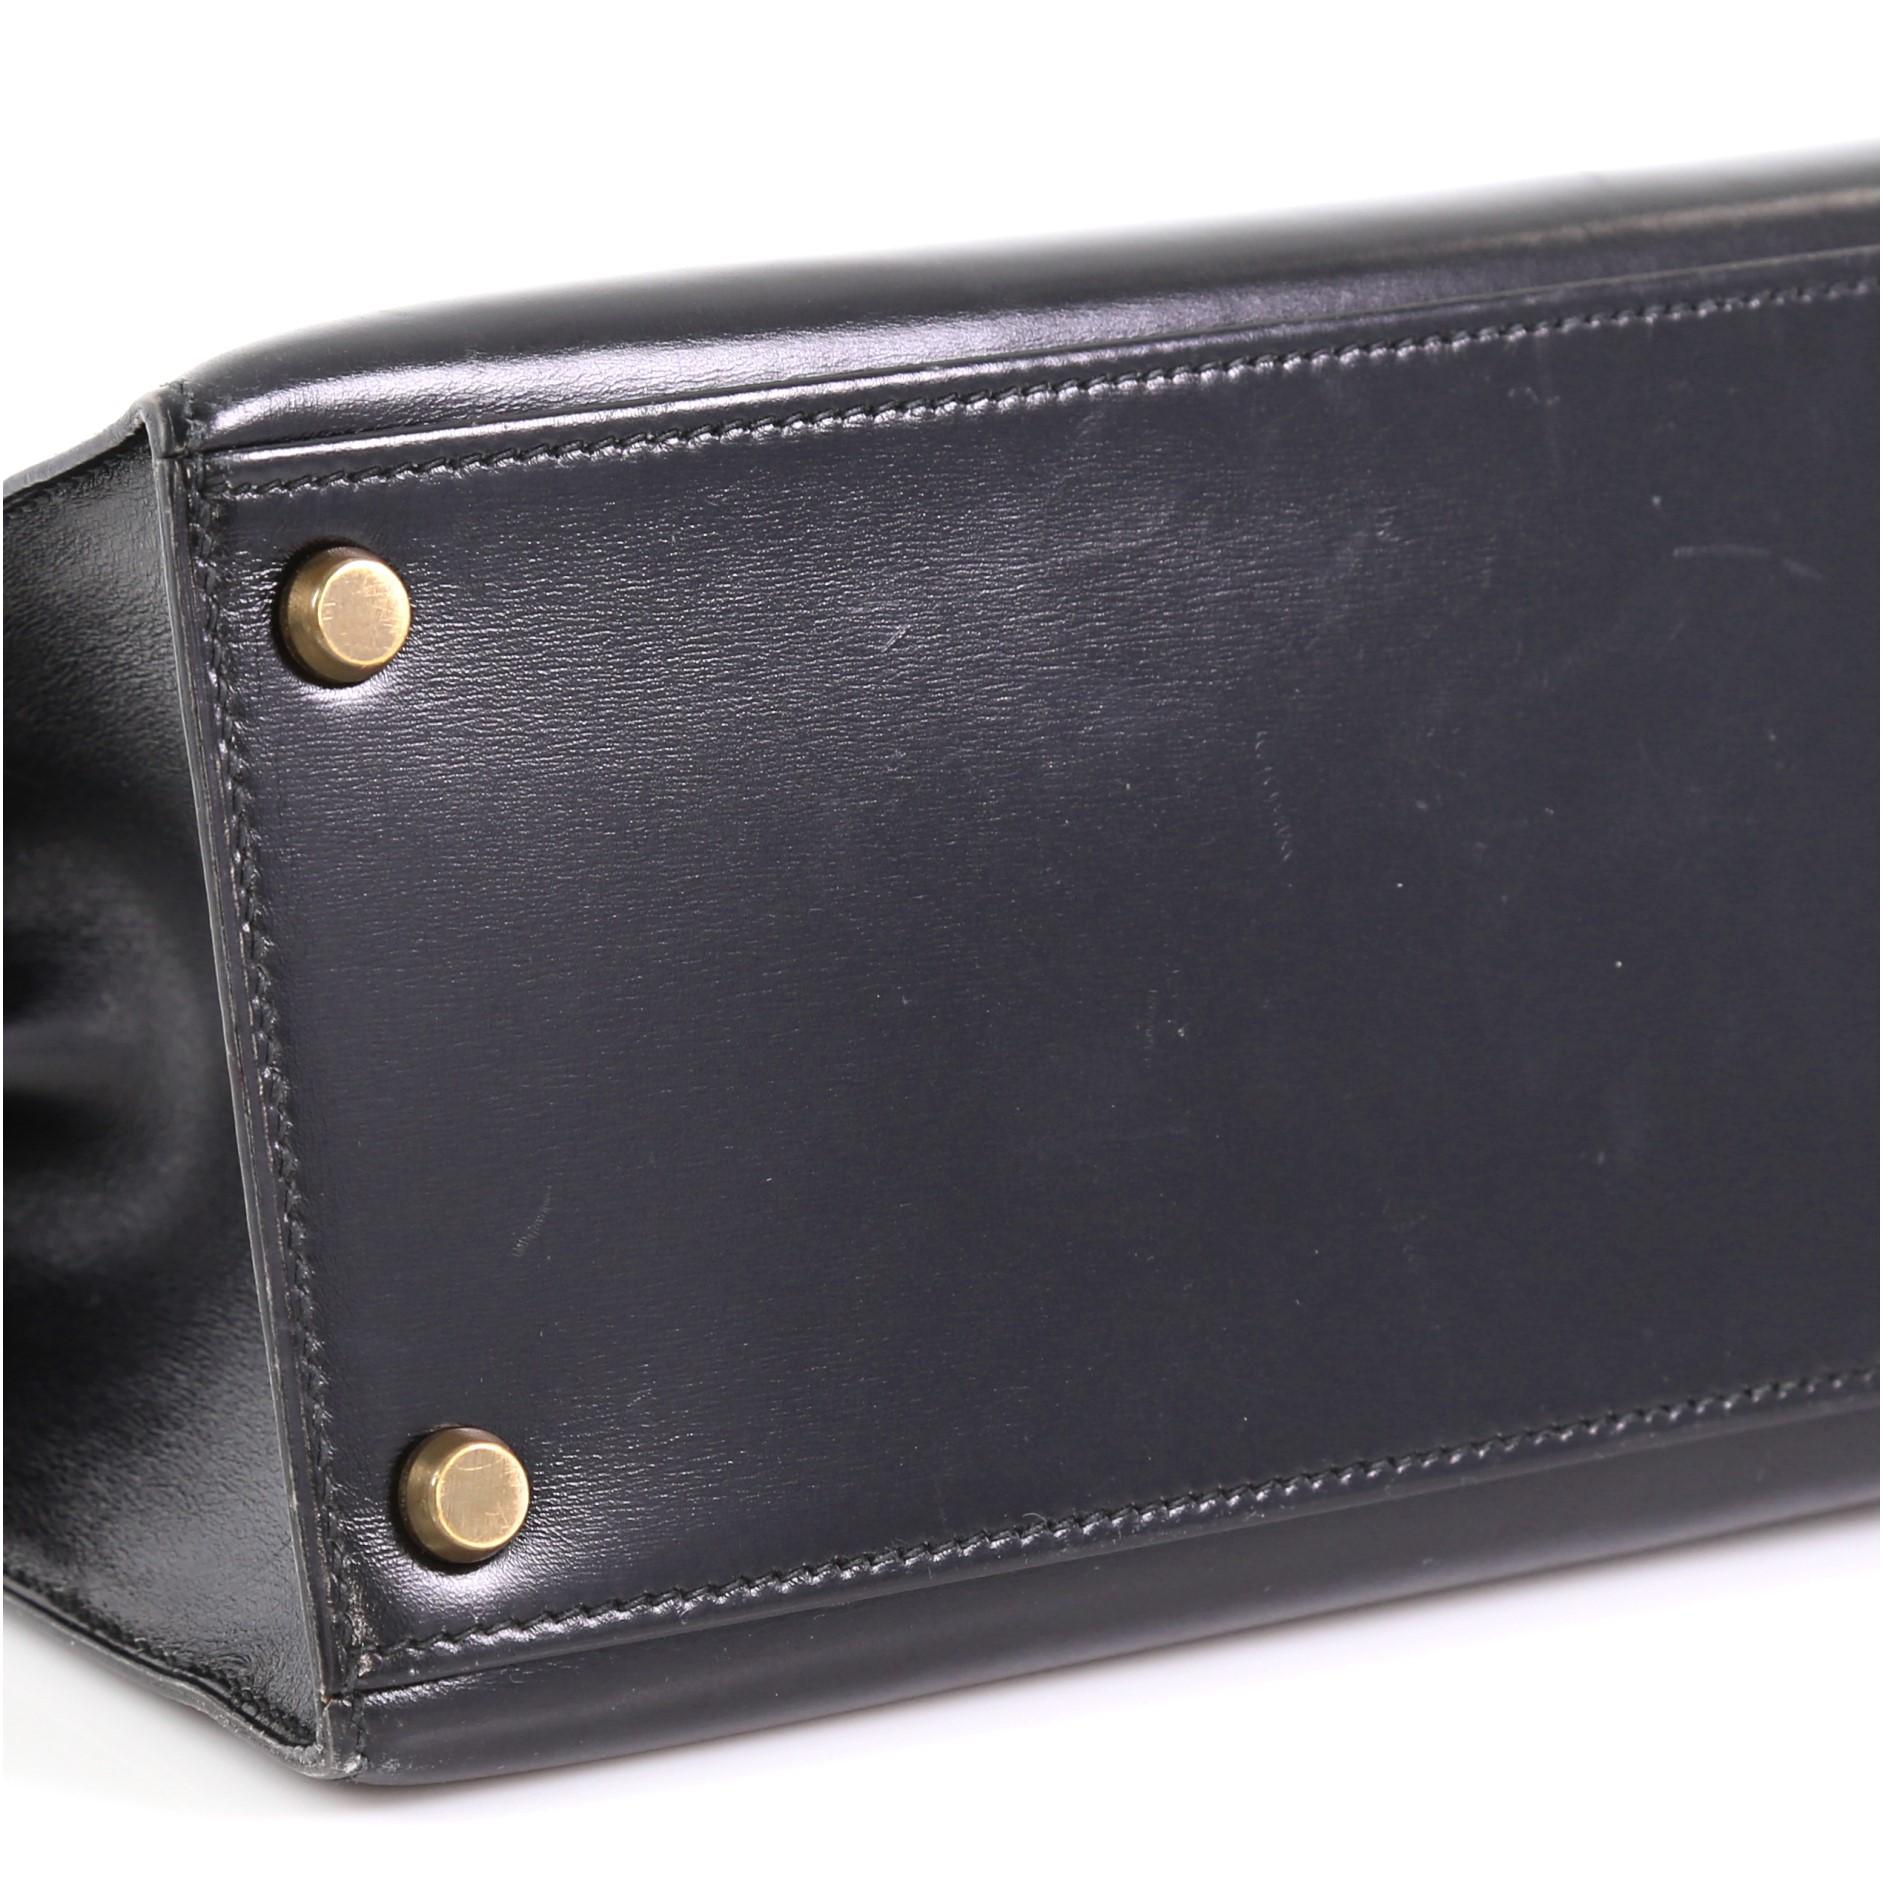 Women's or Men's Hermes Kelly Handbag Noir Box Calf with Gold Hardware 28